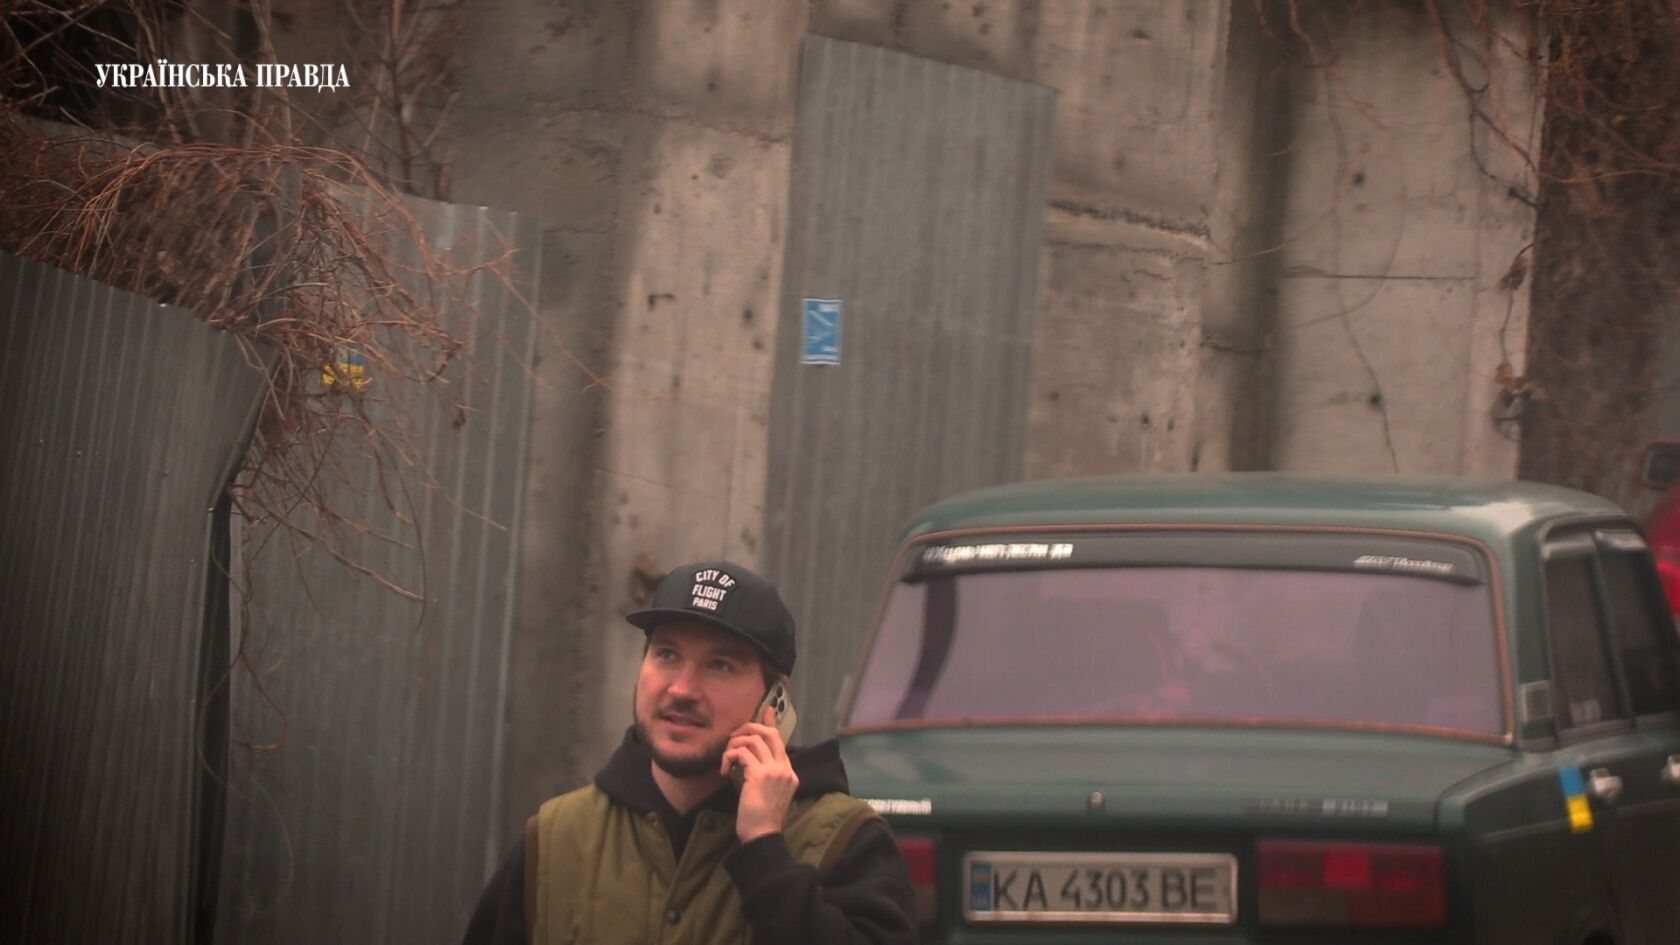 Заступник керівника фракції "Слуги народу" під час війни придбав розкішний маєток у центрі Києва. Фото і відео